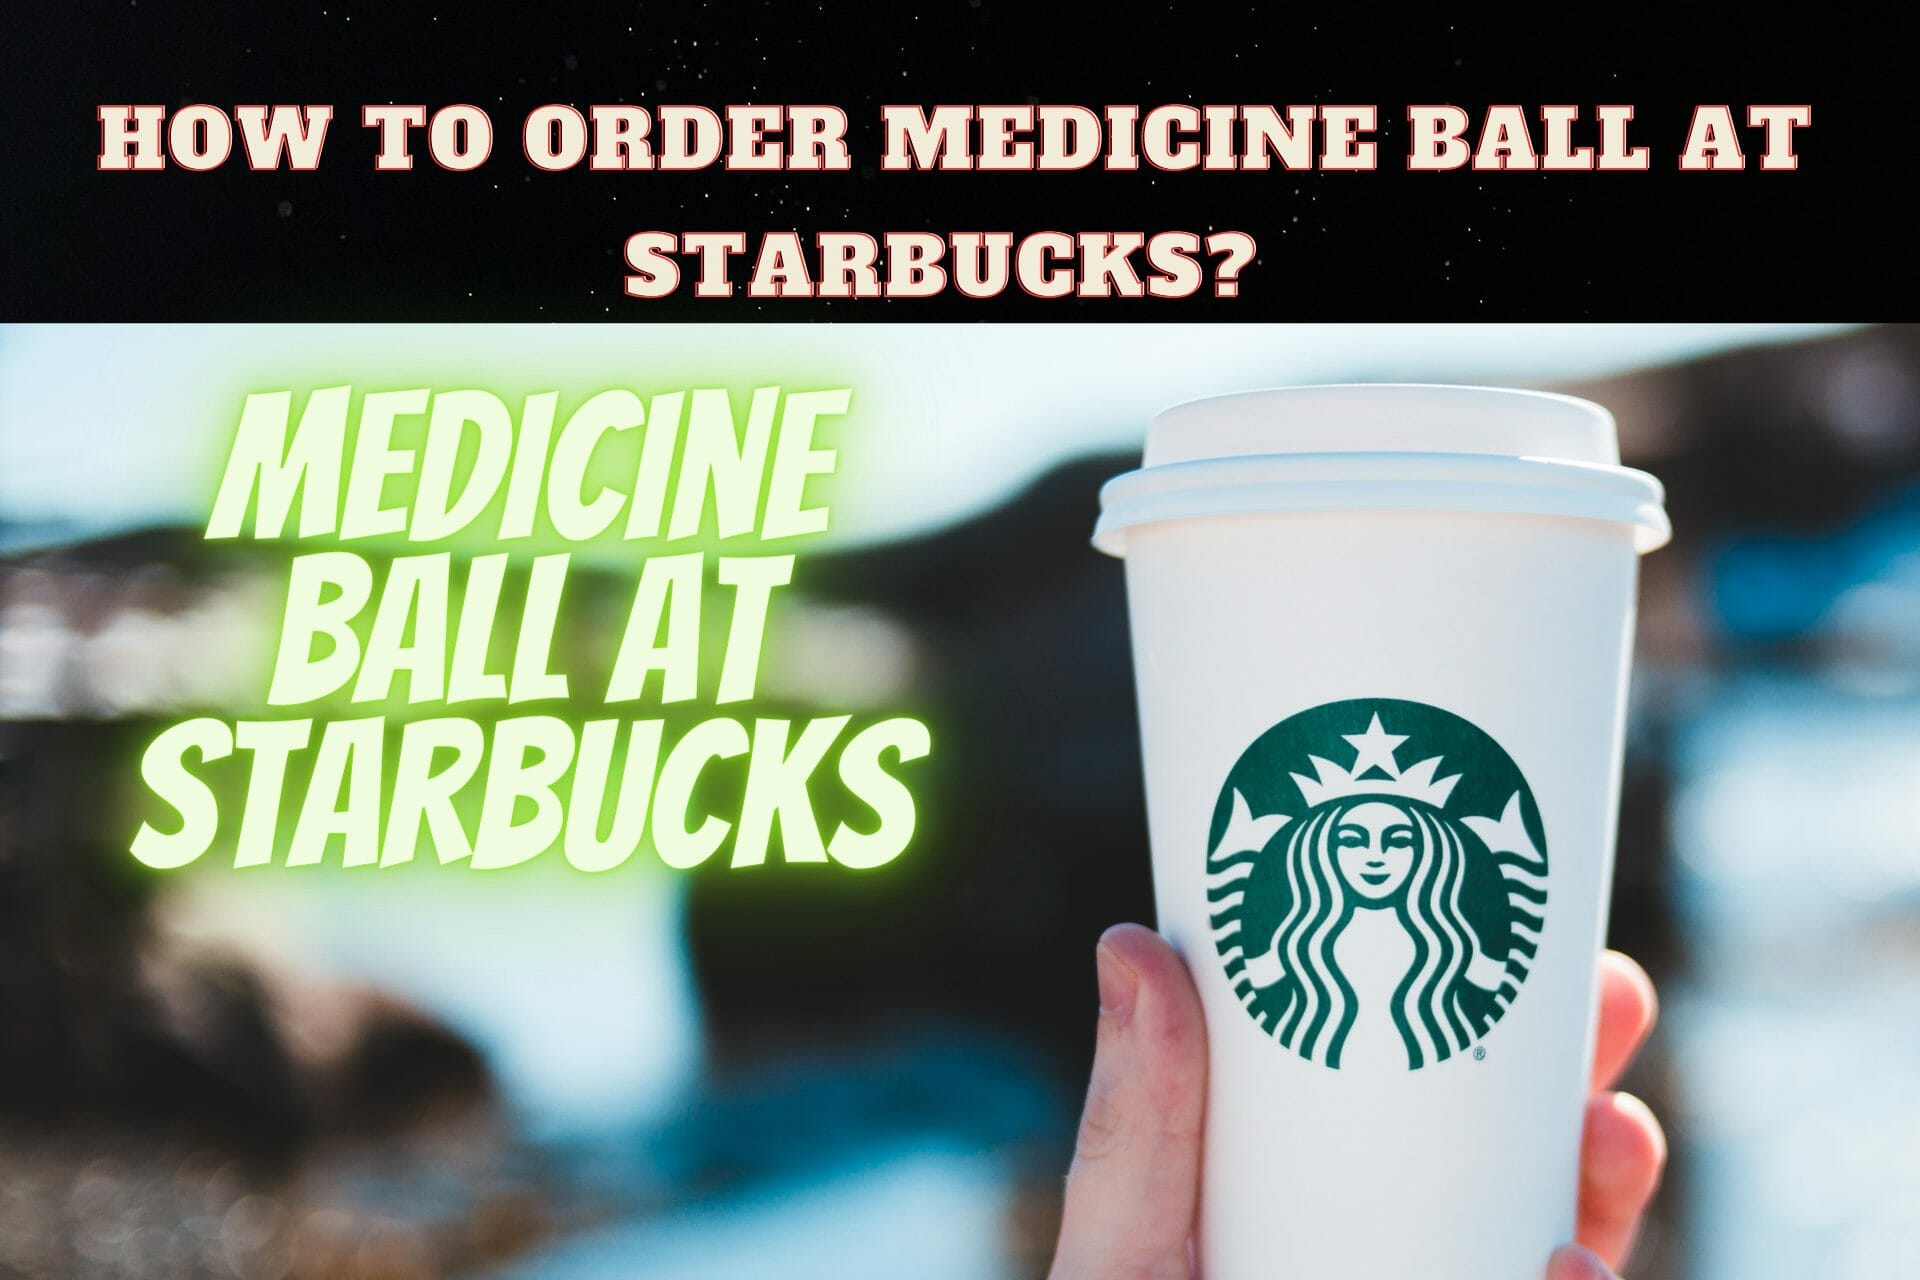 Medicine ball at Starbucks